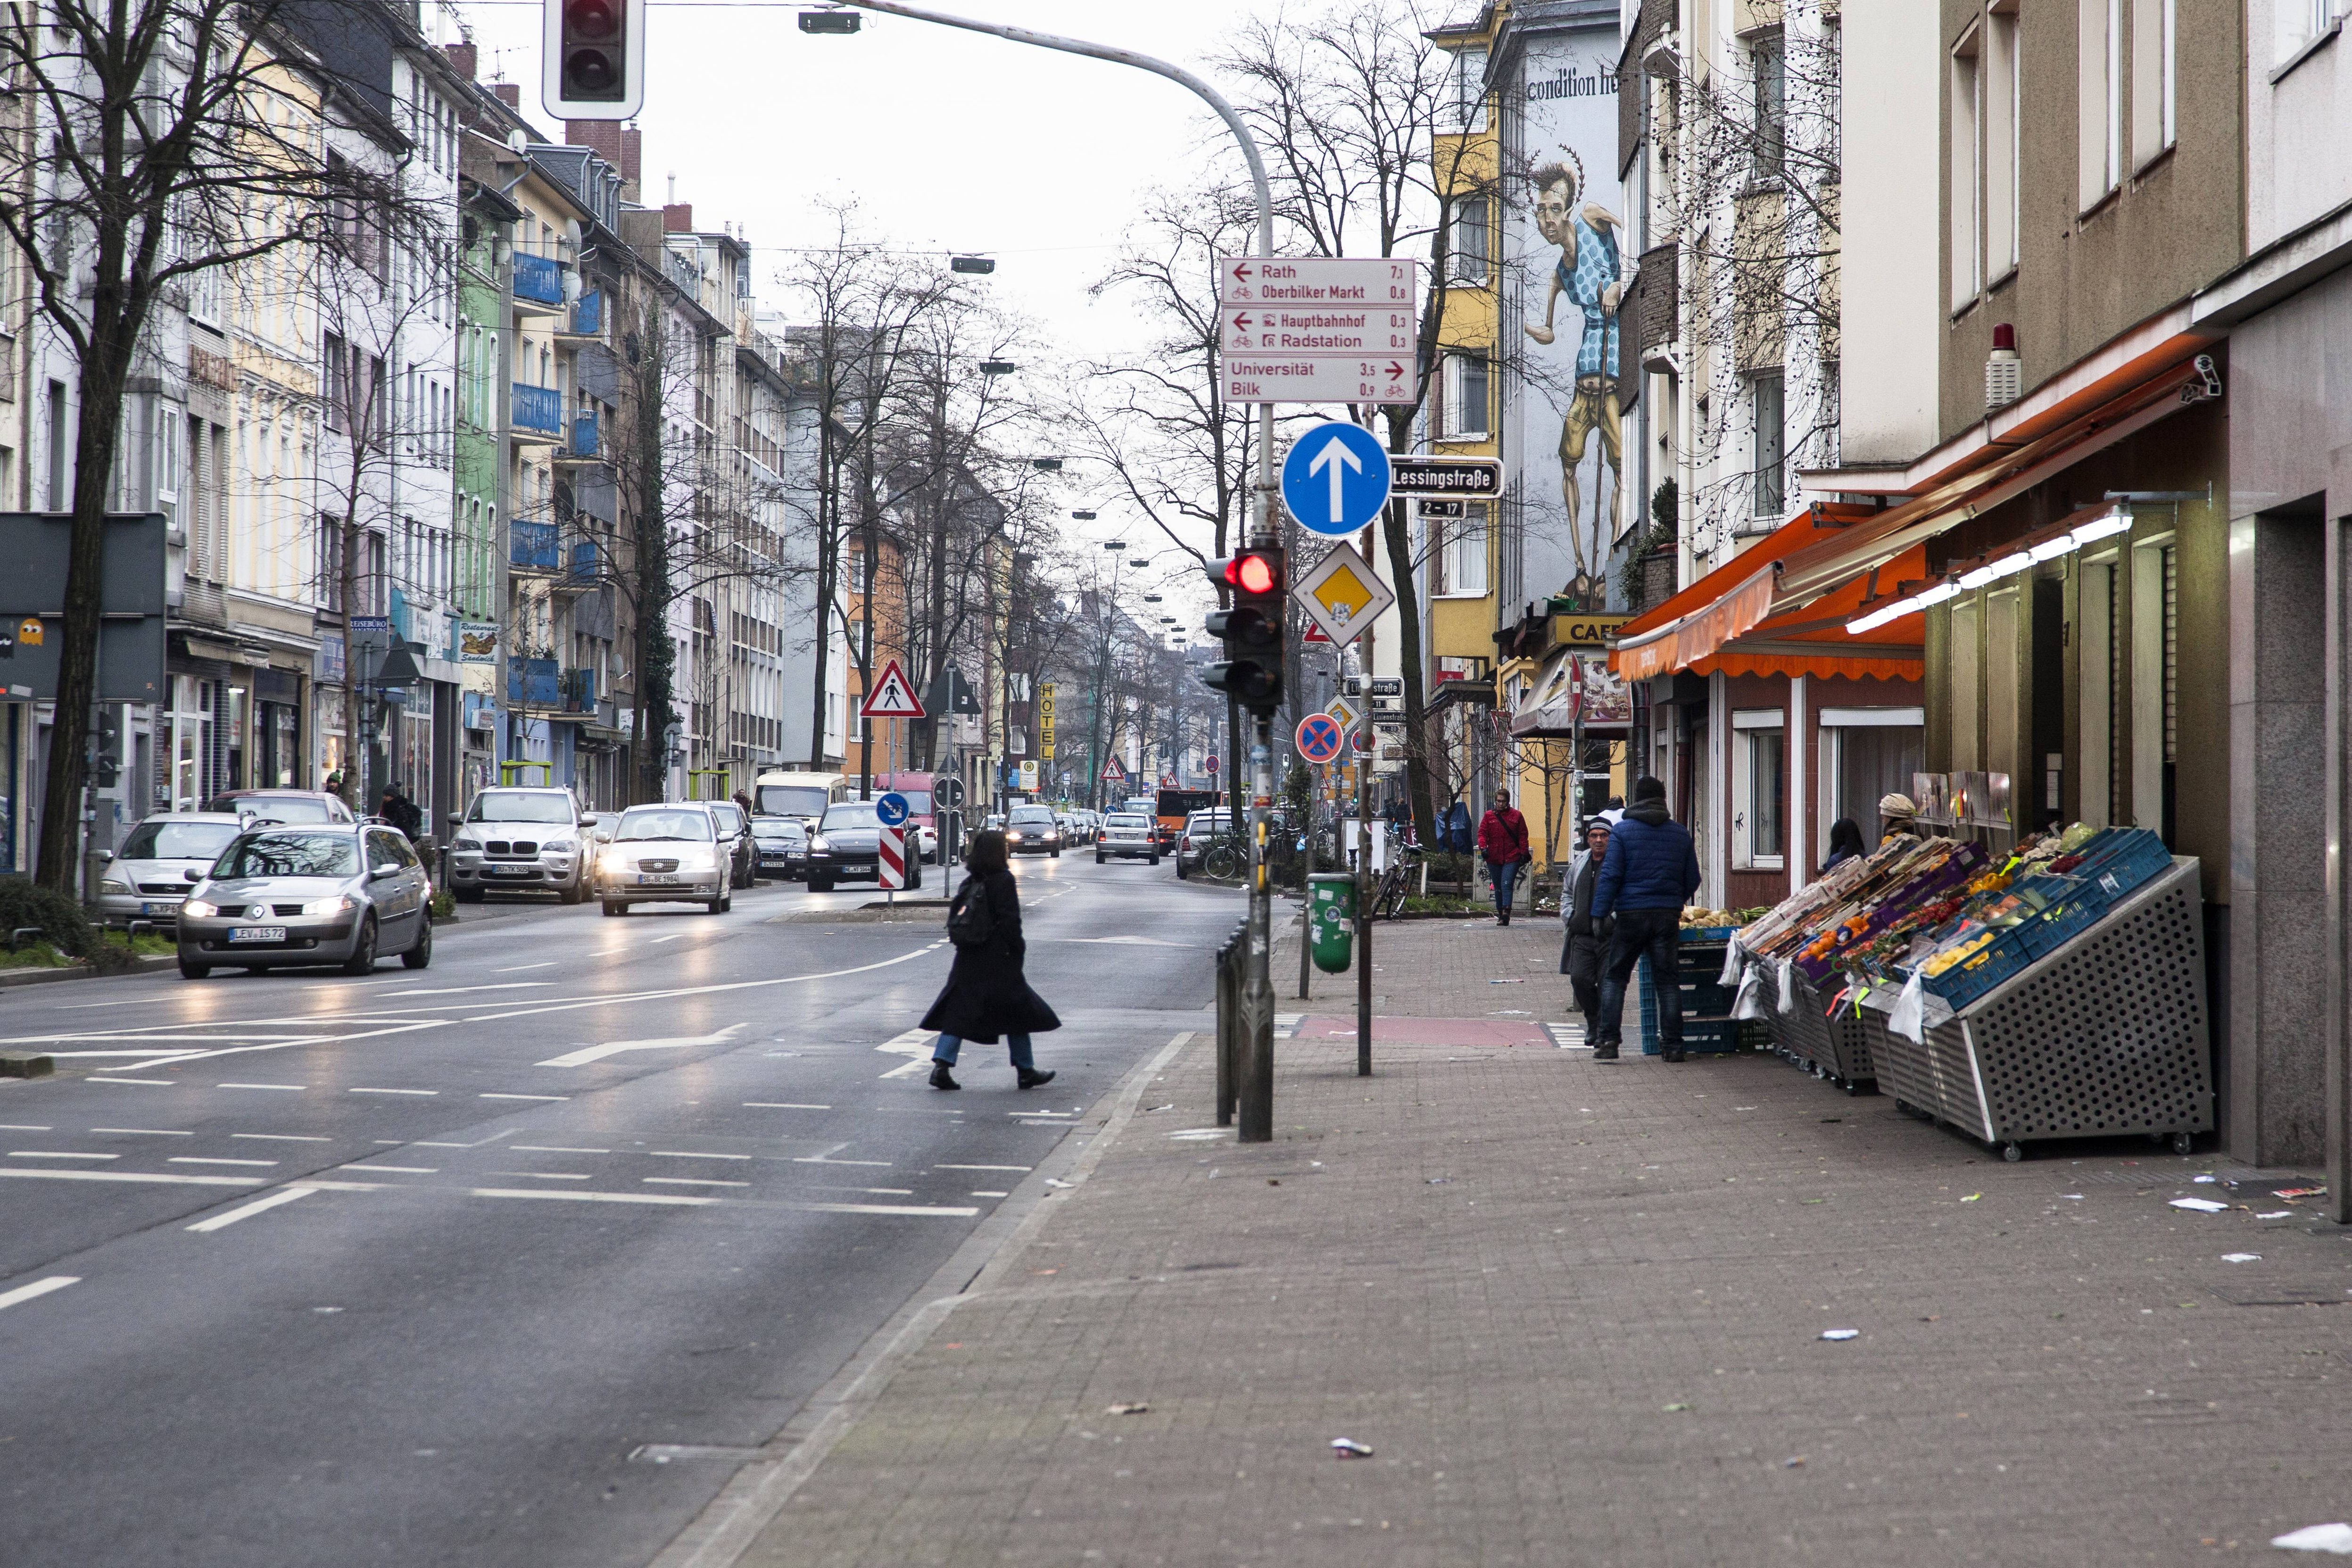 Düsseldorf: Angriff auf arabisches Straßenschild! Schlimme Botschaft 